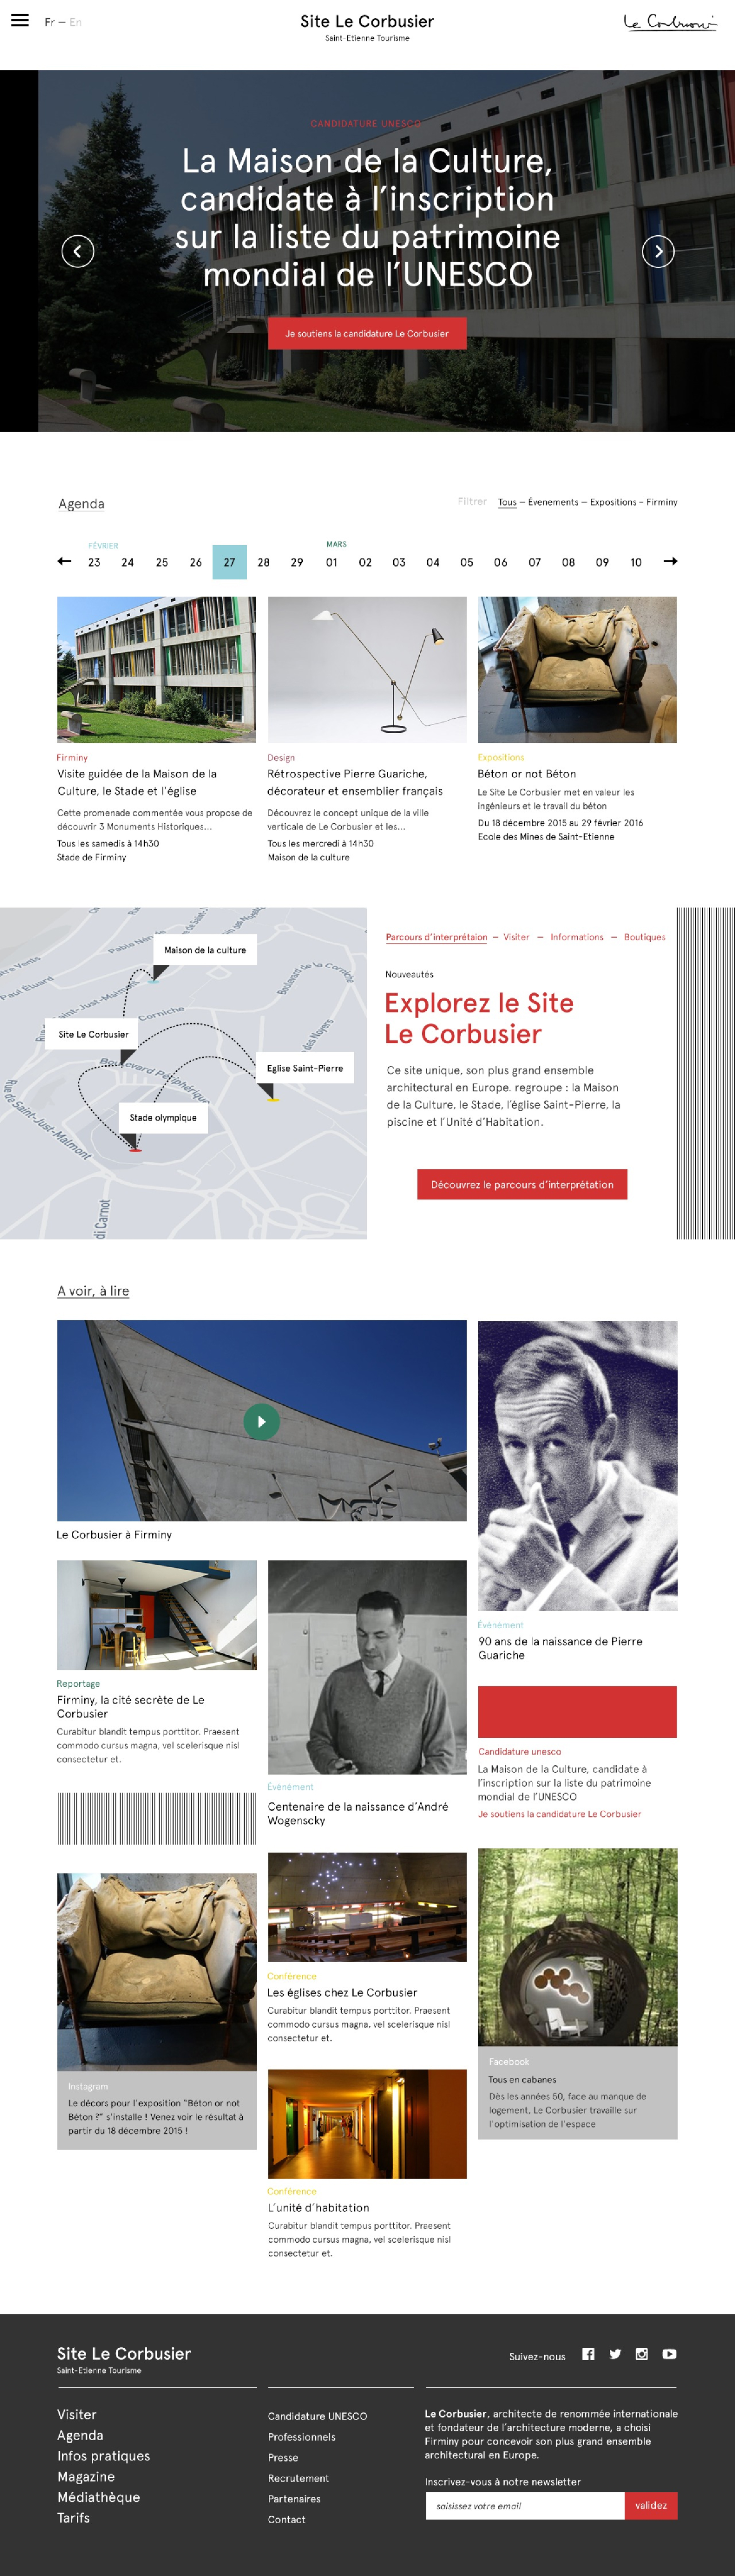 Accueil-Site-Le-Corbusier-1